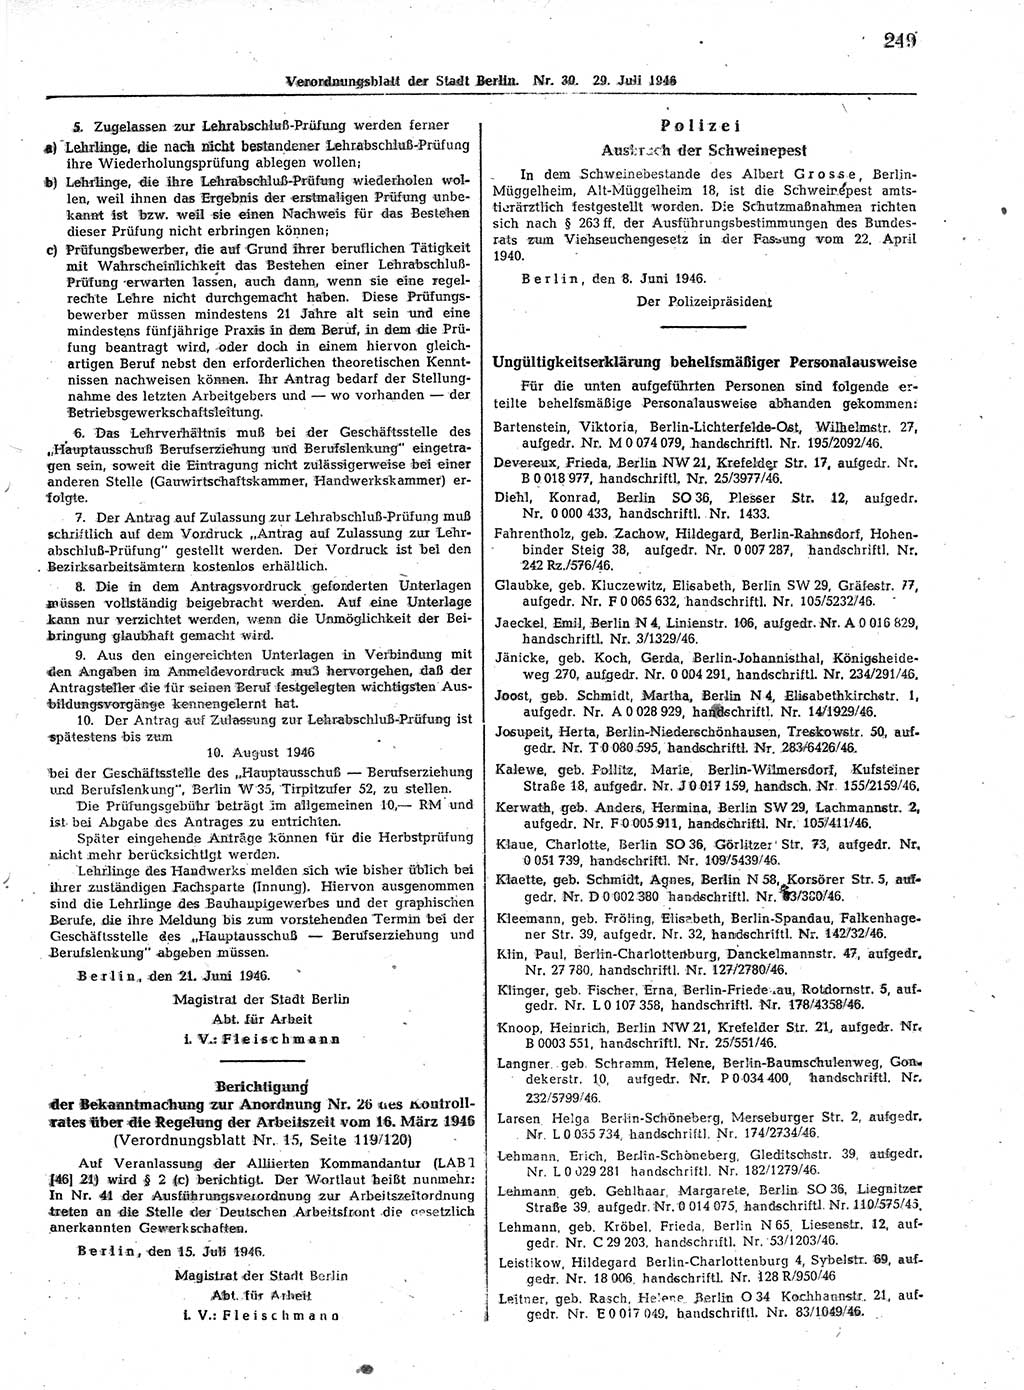 Verordnungsblatt (VOBl.) der Stadt Berlin, für Groß-Berlin 1946, Seite 249 (VOBl. Bln. 1946, S. 249)